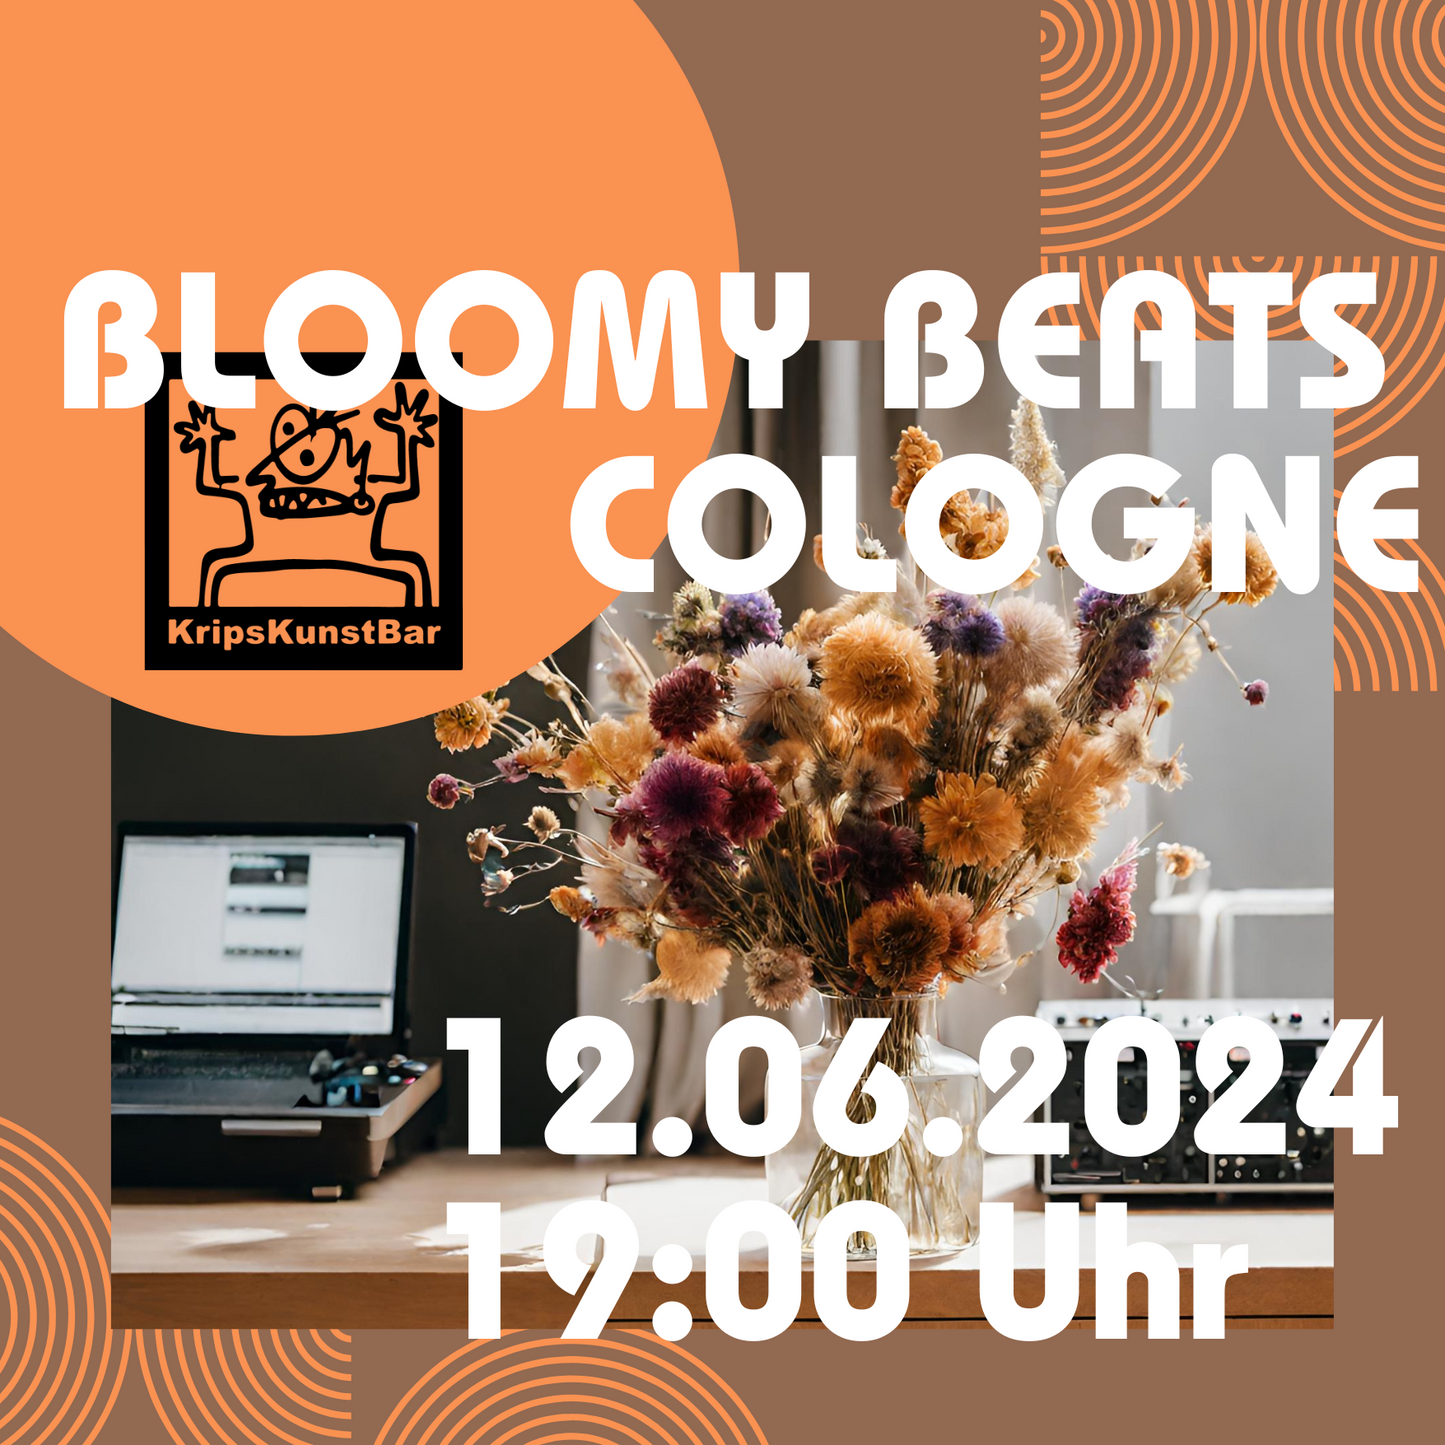 BLOOMY BEATS - Trockenblumenbouquet Workshop Kunstbar Köln 12.06.2024 19 Uhr